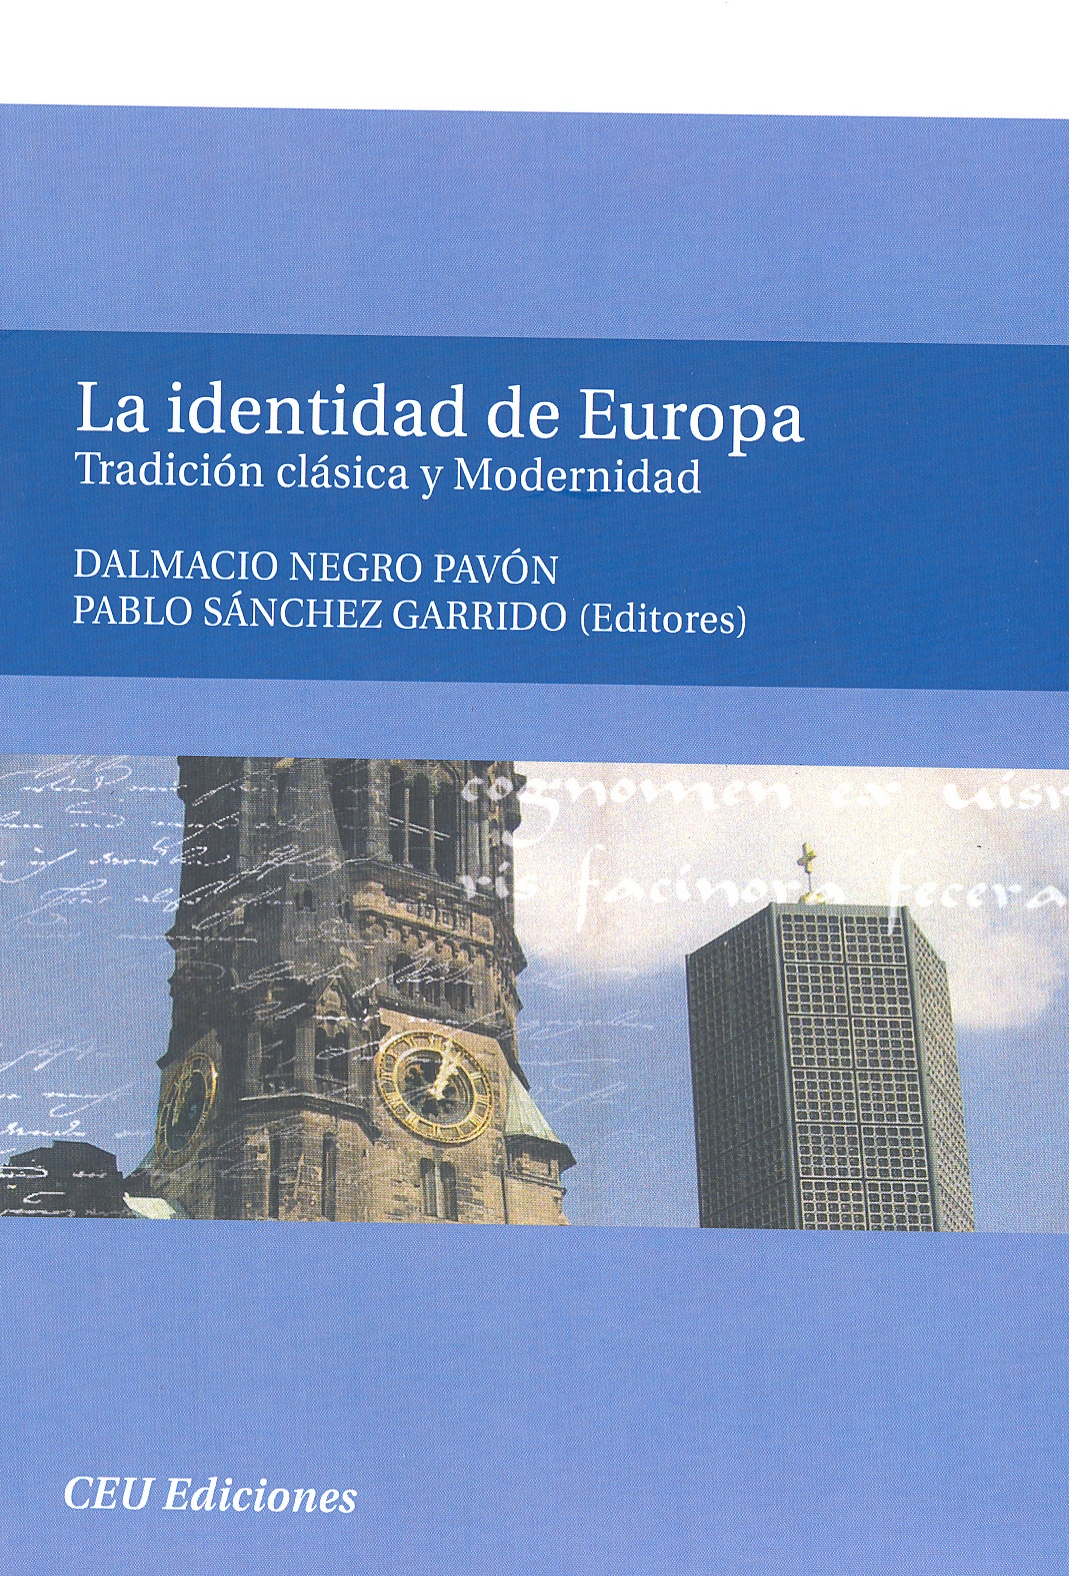 Imagen de portada del libro La identidad de Europa